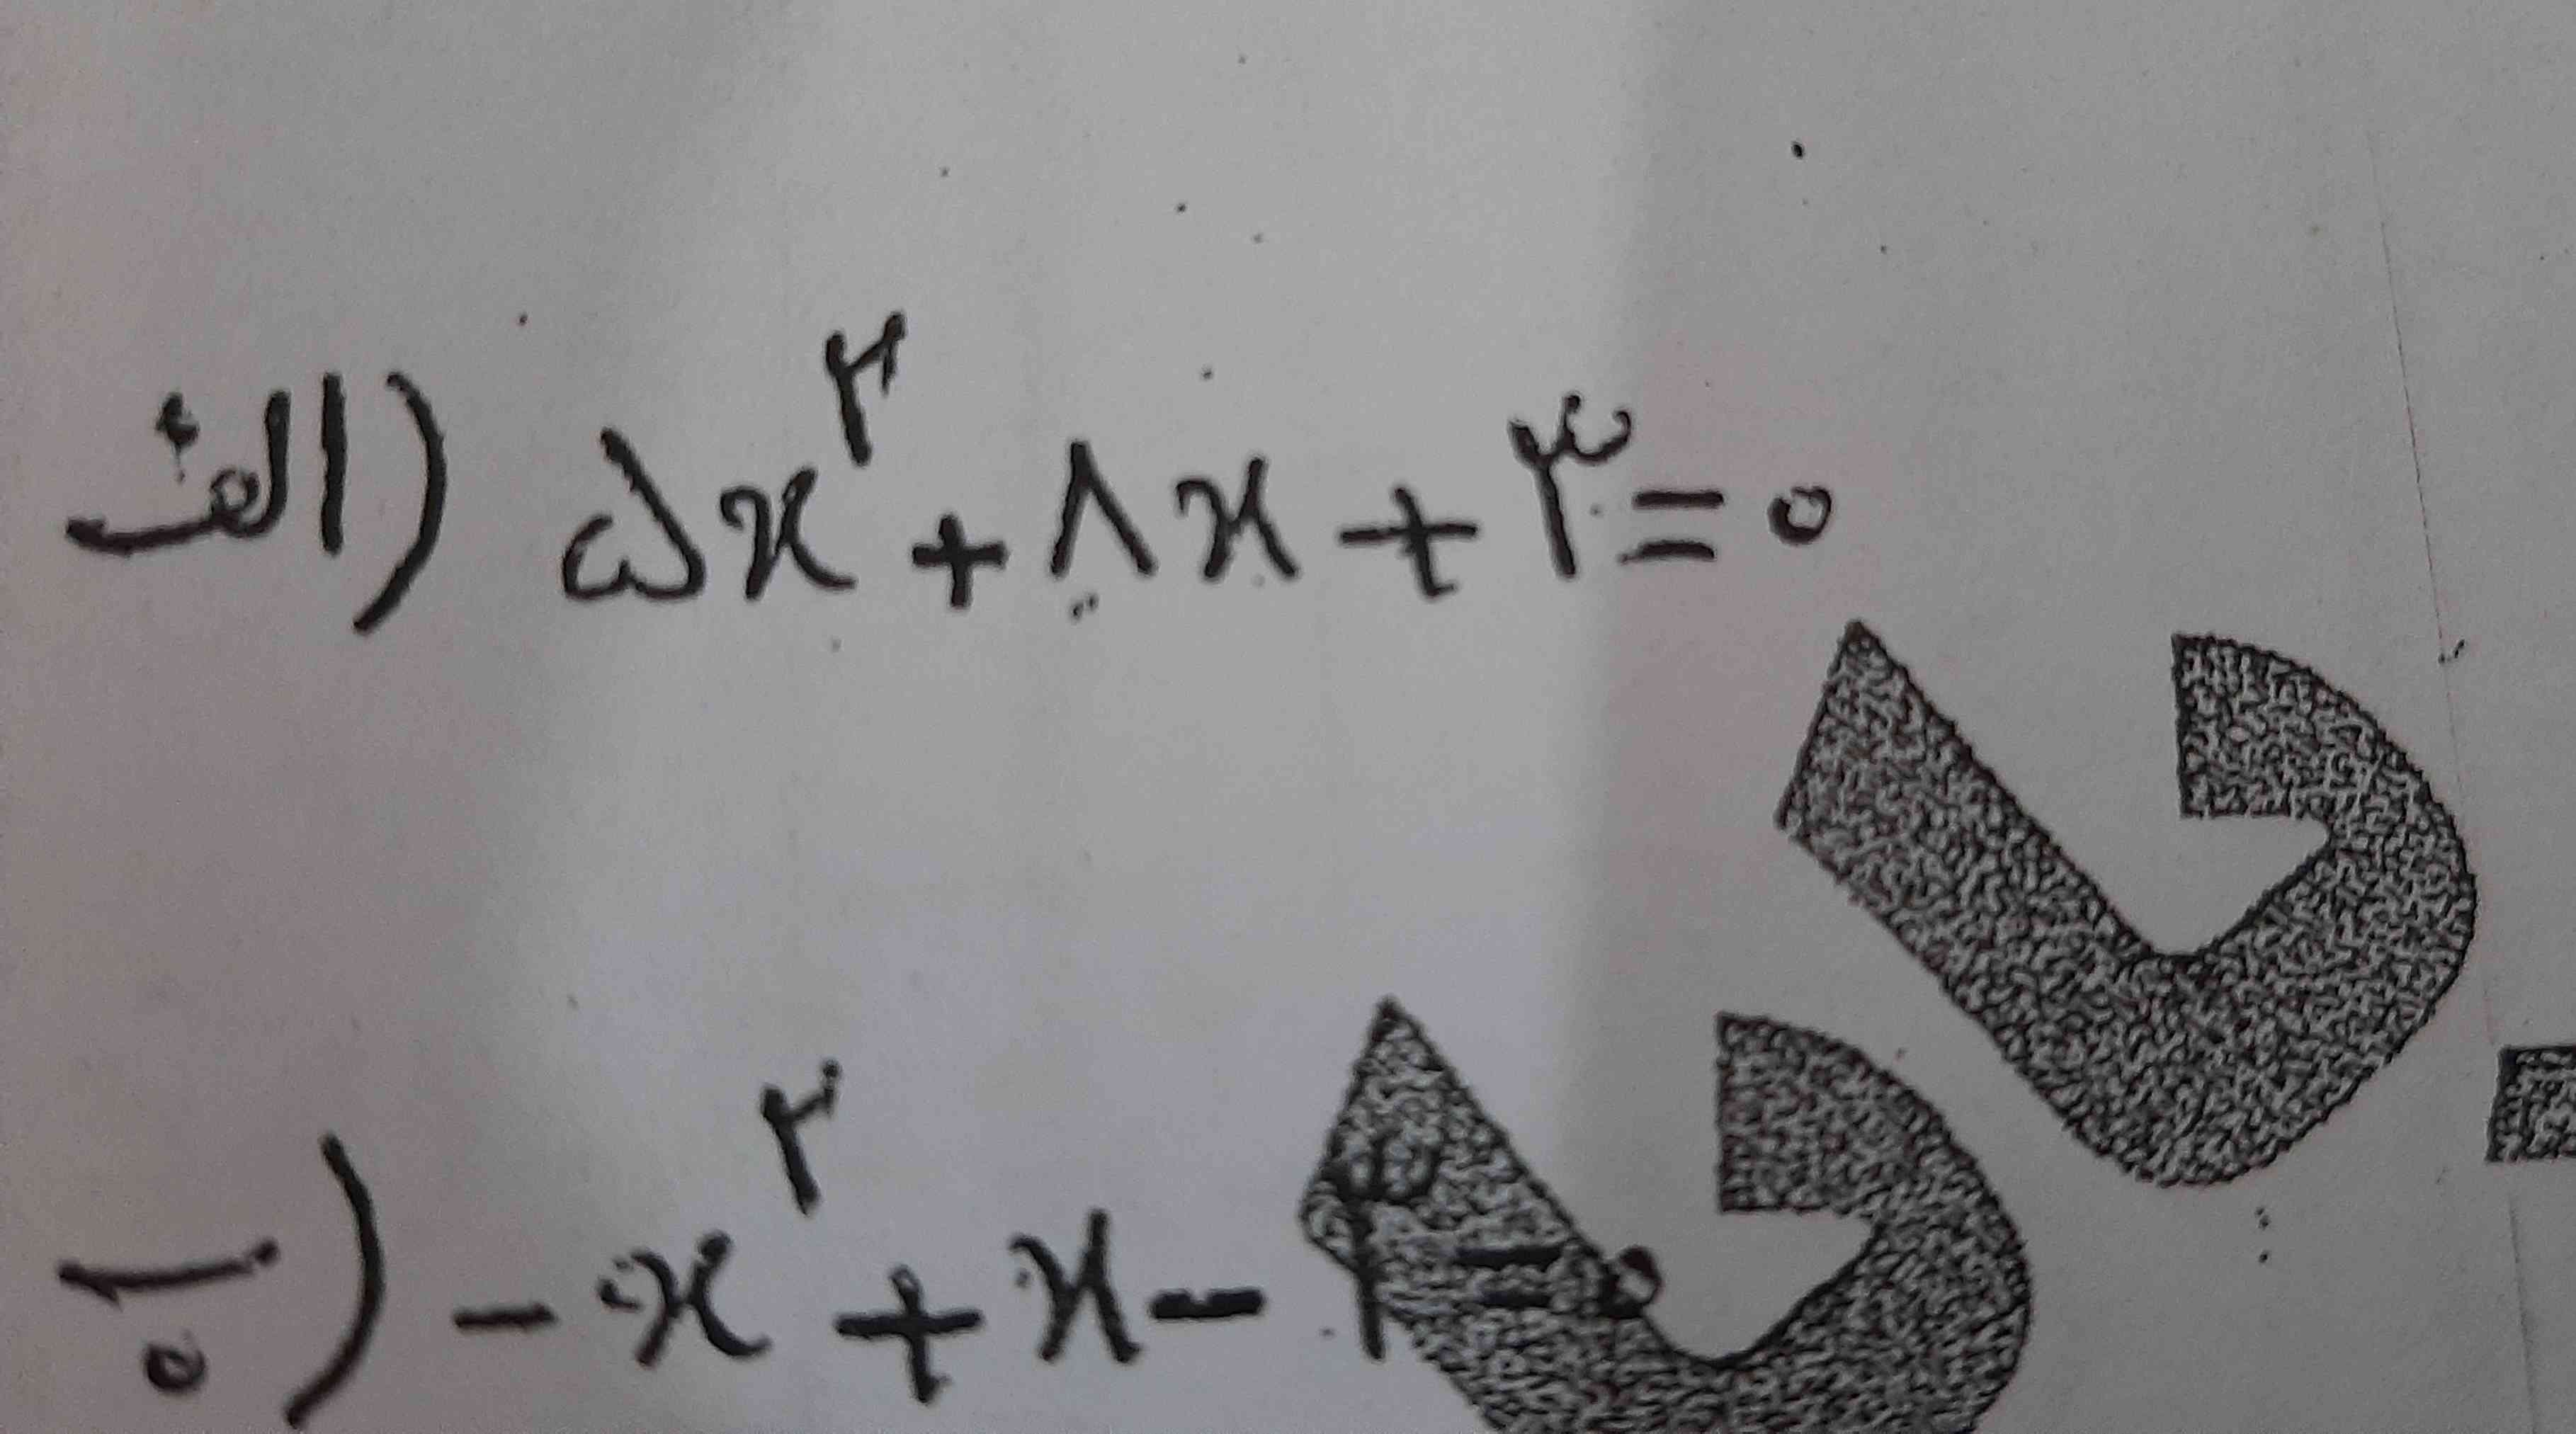 سلام صروت سوال .. معادلات زیر را حل کنید